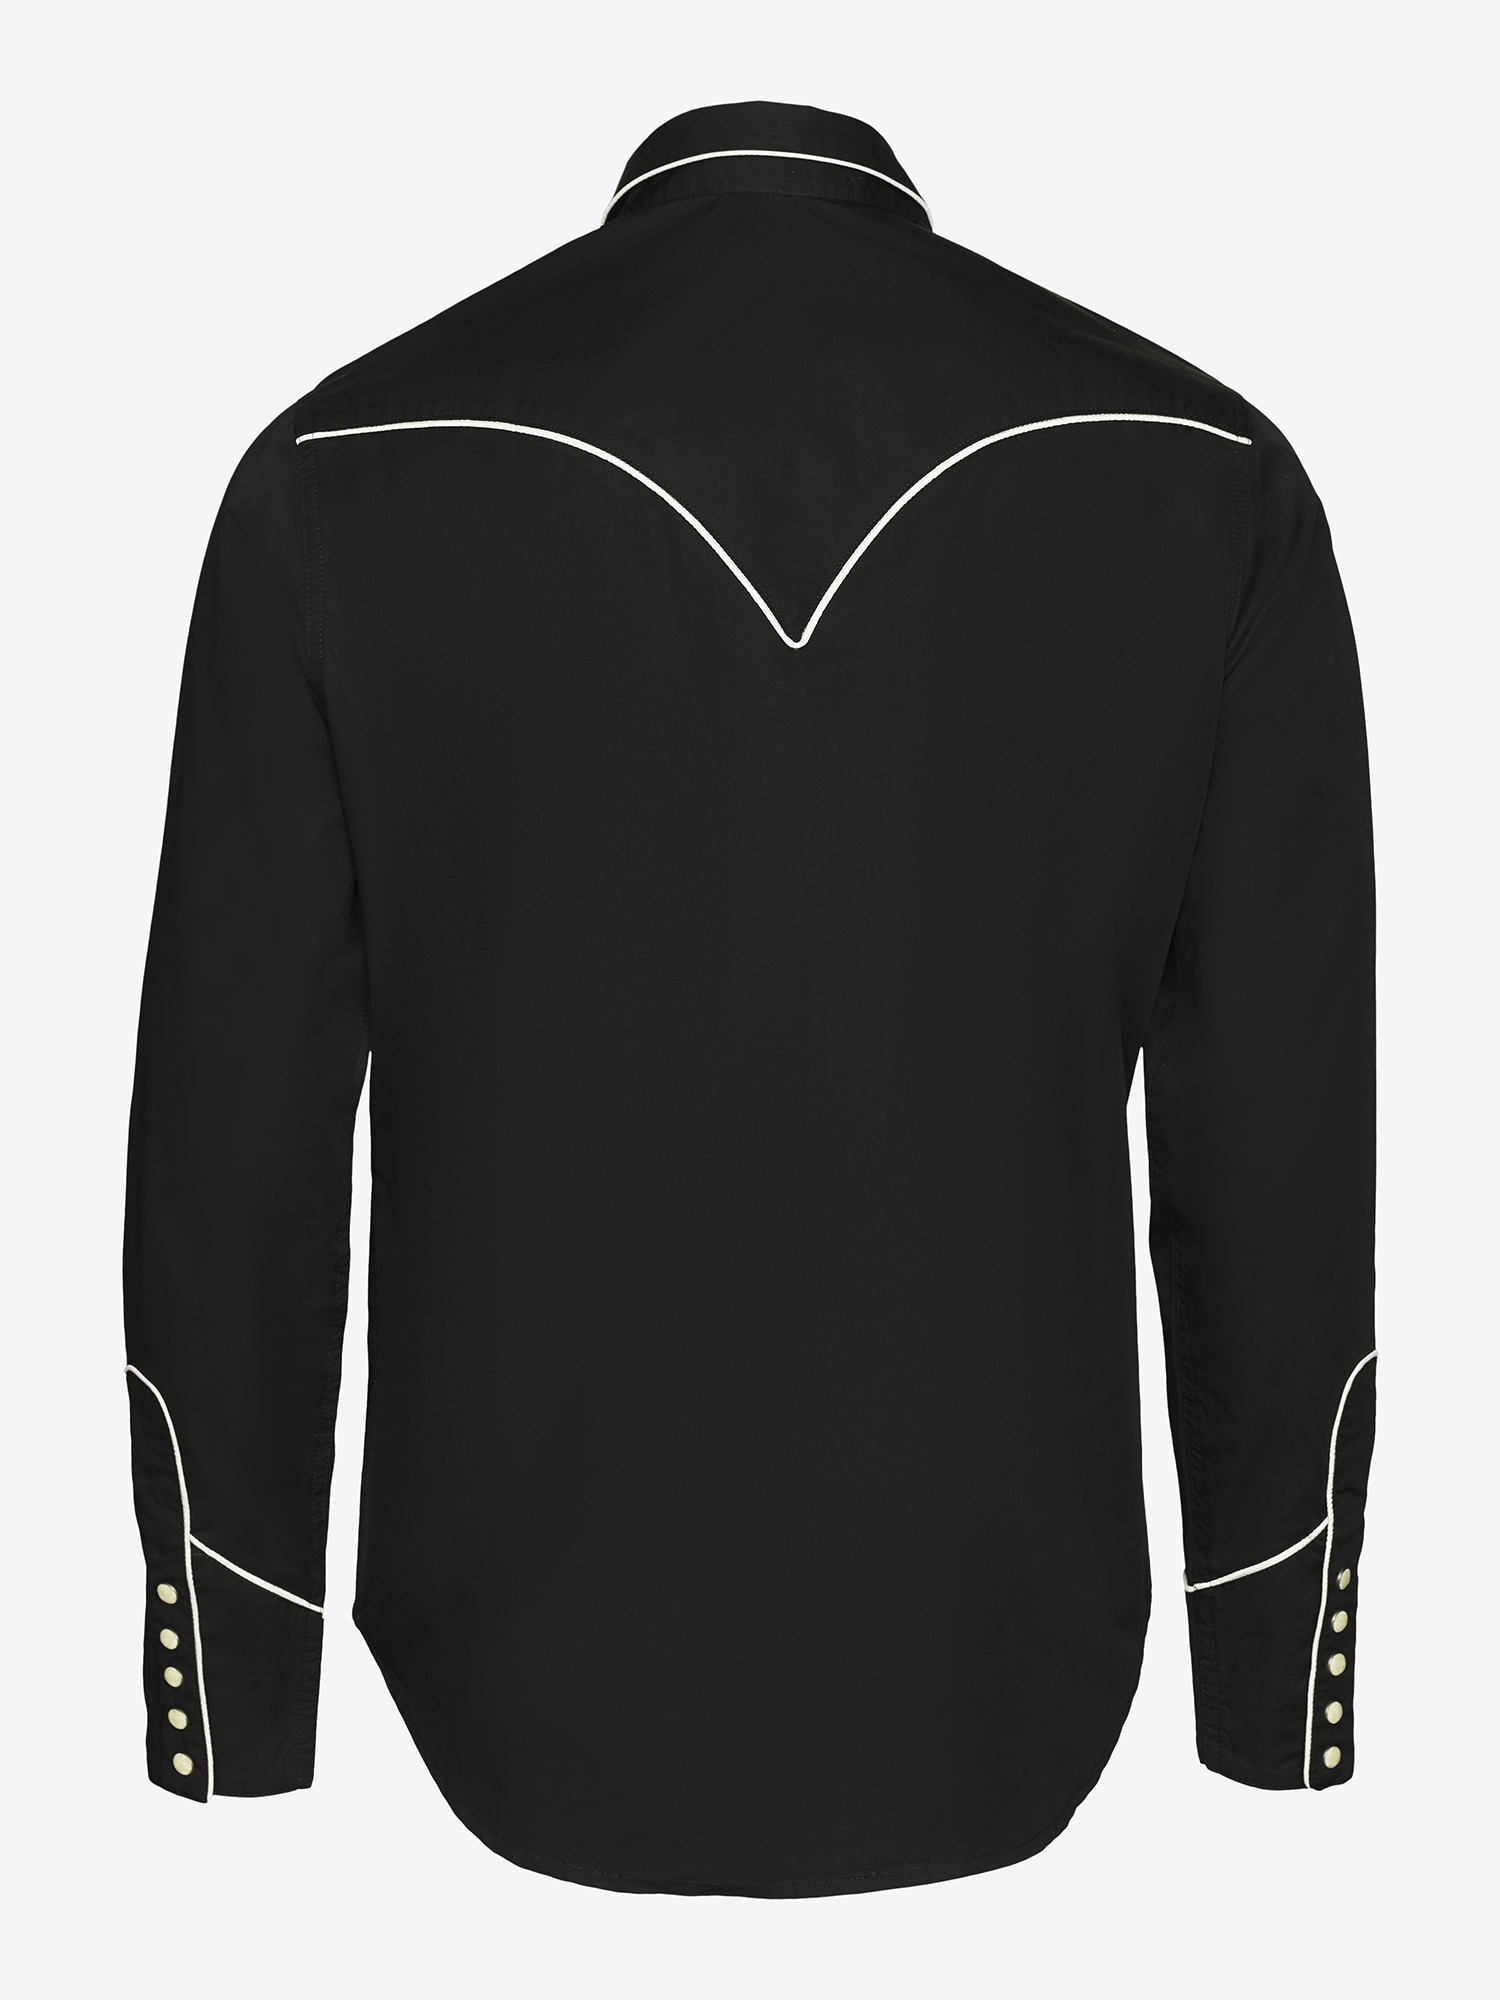 Louis Vuitton 2020 Leaf Print Shirt w/ Tags - Black Casual Shirts